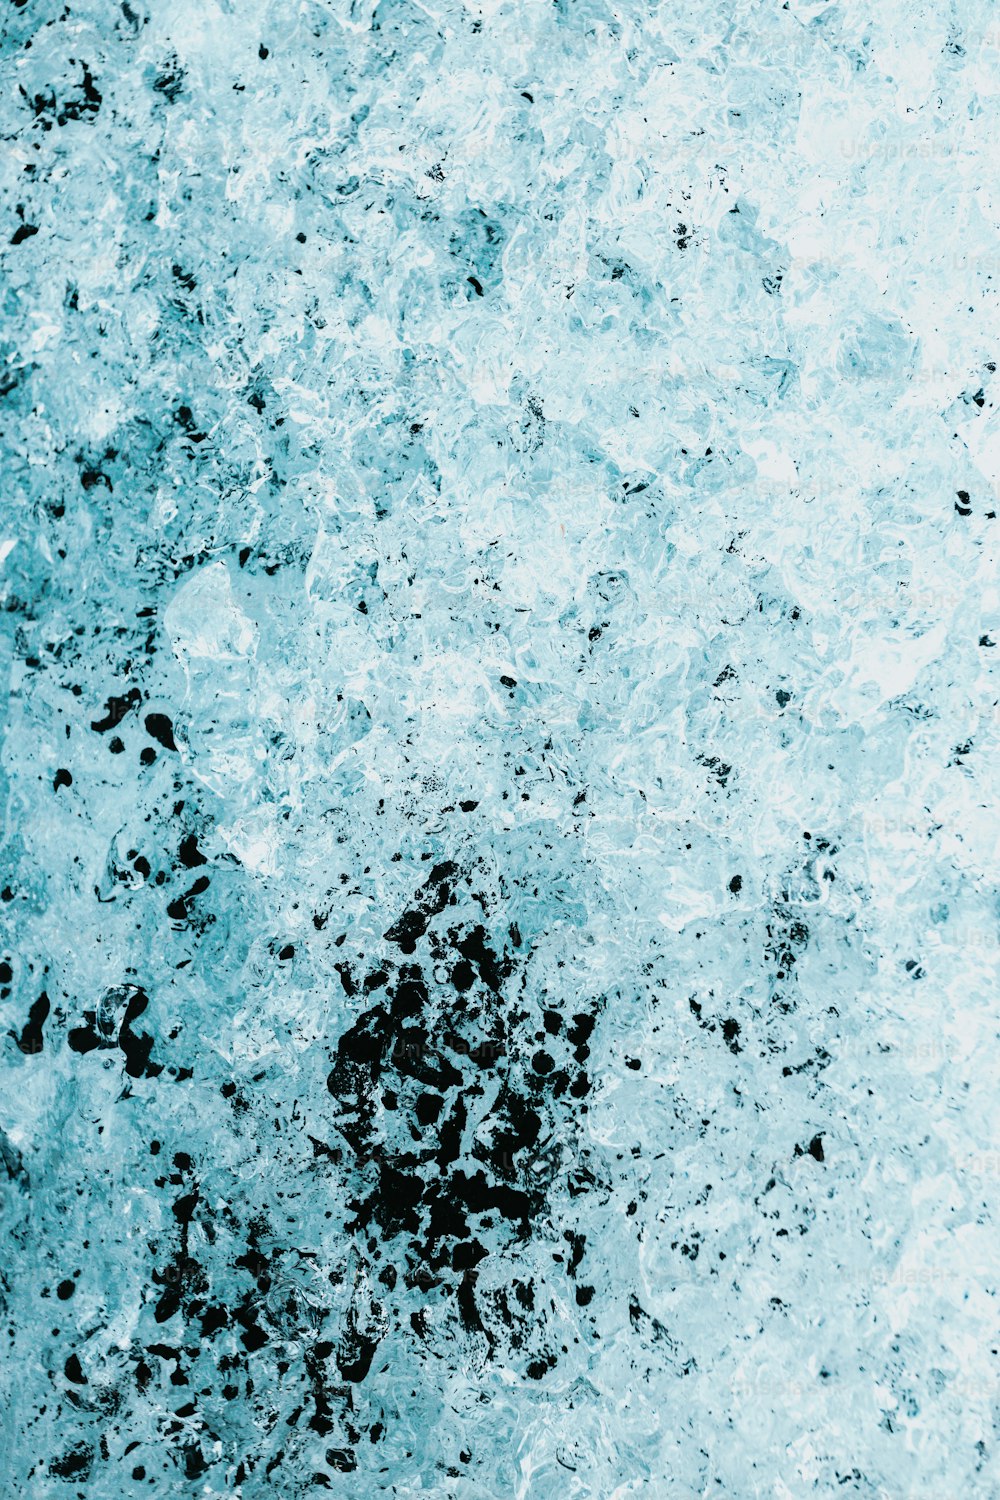 Une photo en noir et blanc de glace et d’eau